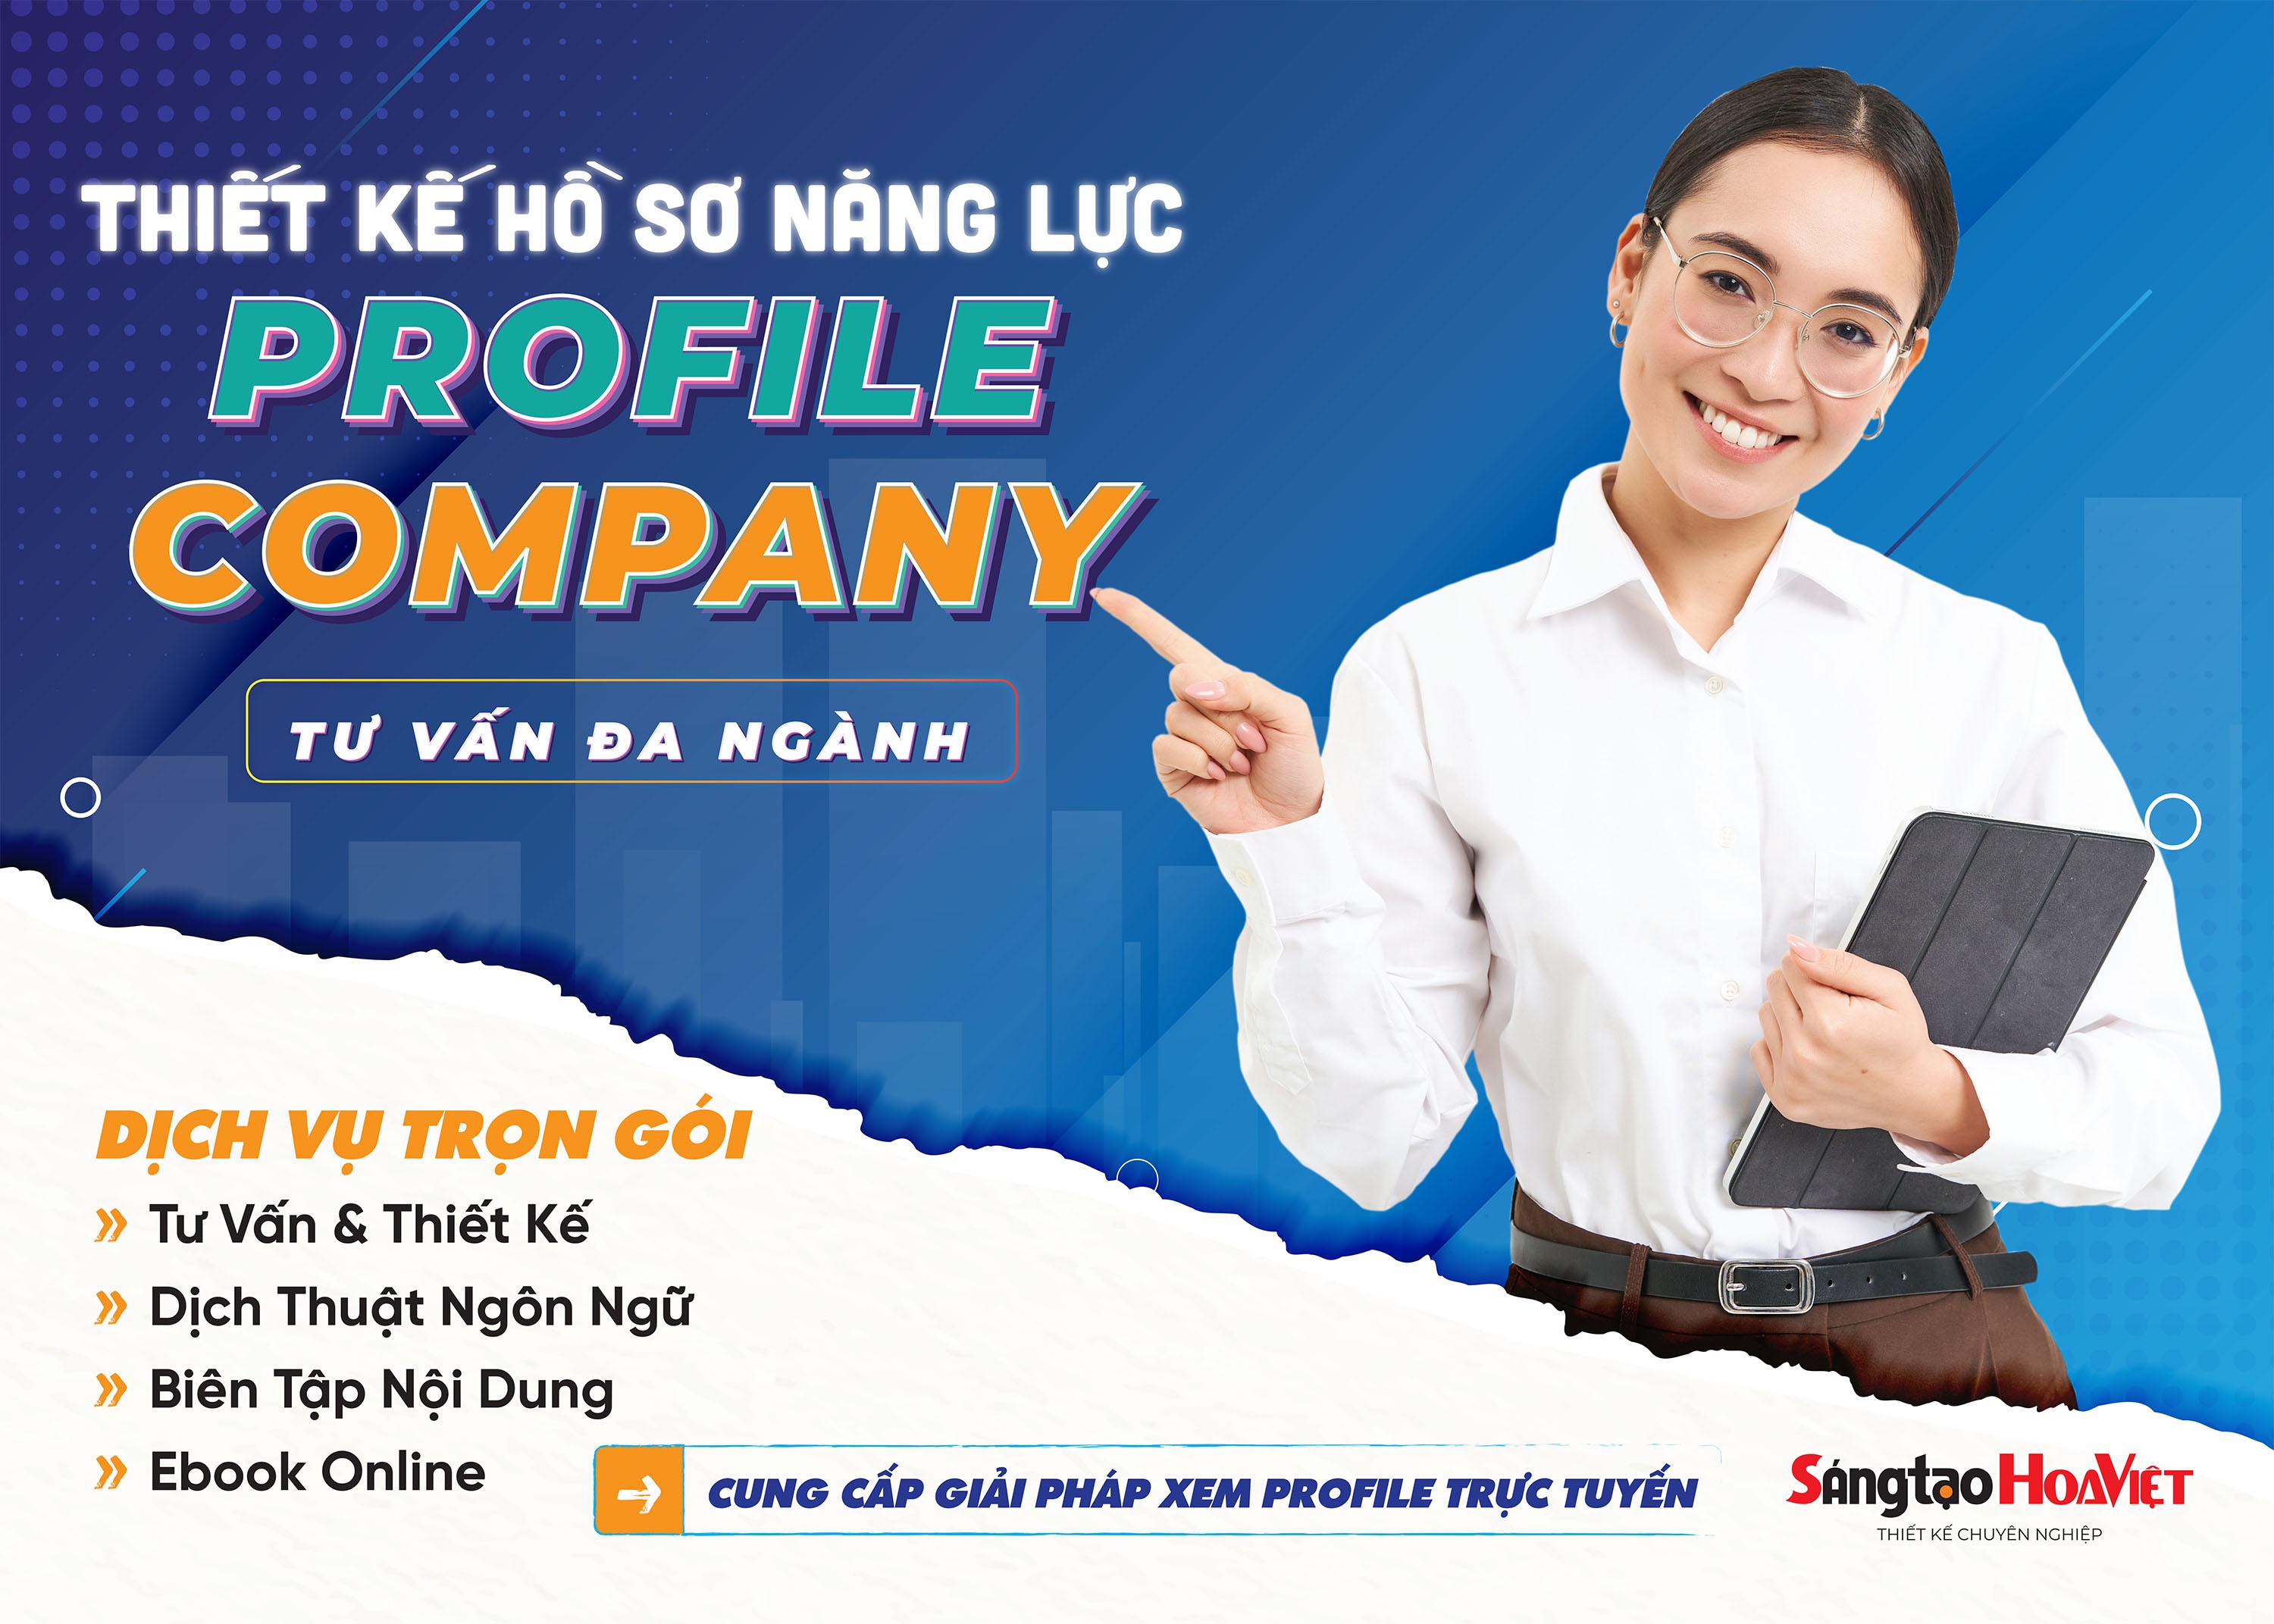 Sáng tạo Hoa Việt - Thiết kế hồ sơ năng lực doanh nghiệp